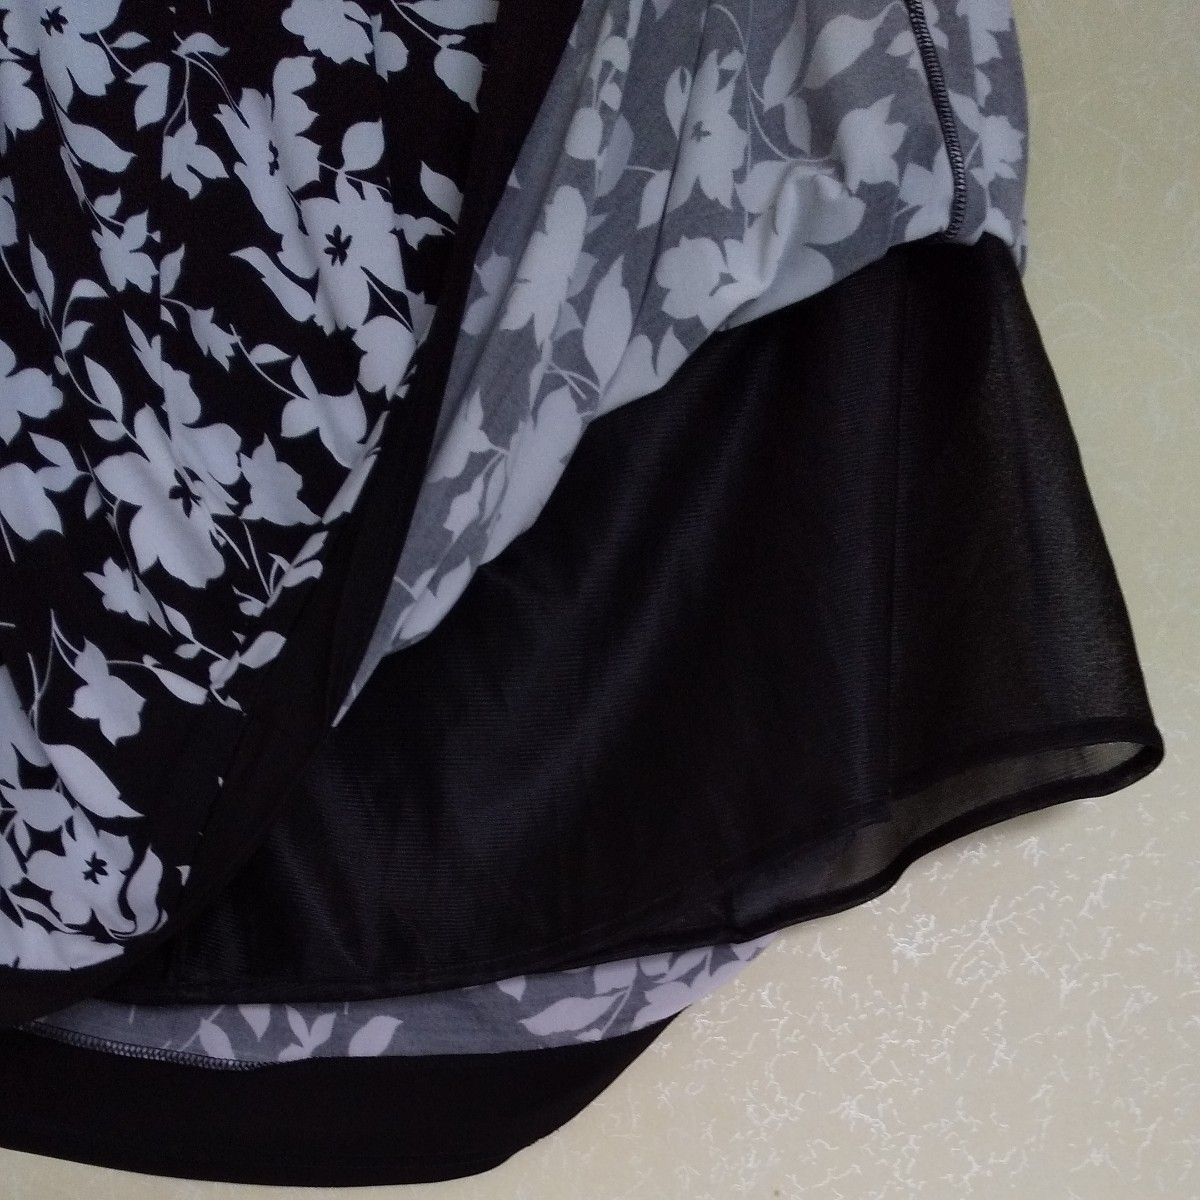 フレアスカート膝丈-黒白花柄スカート&ショルダーミニバッグ